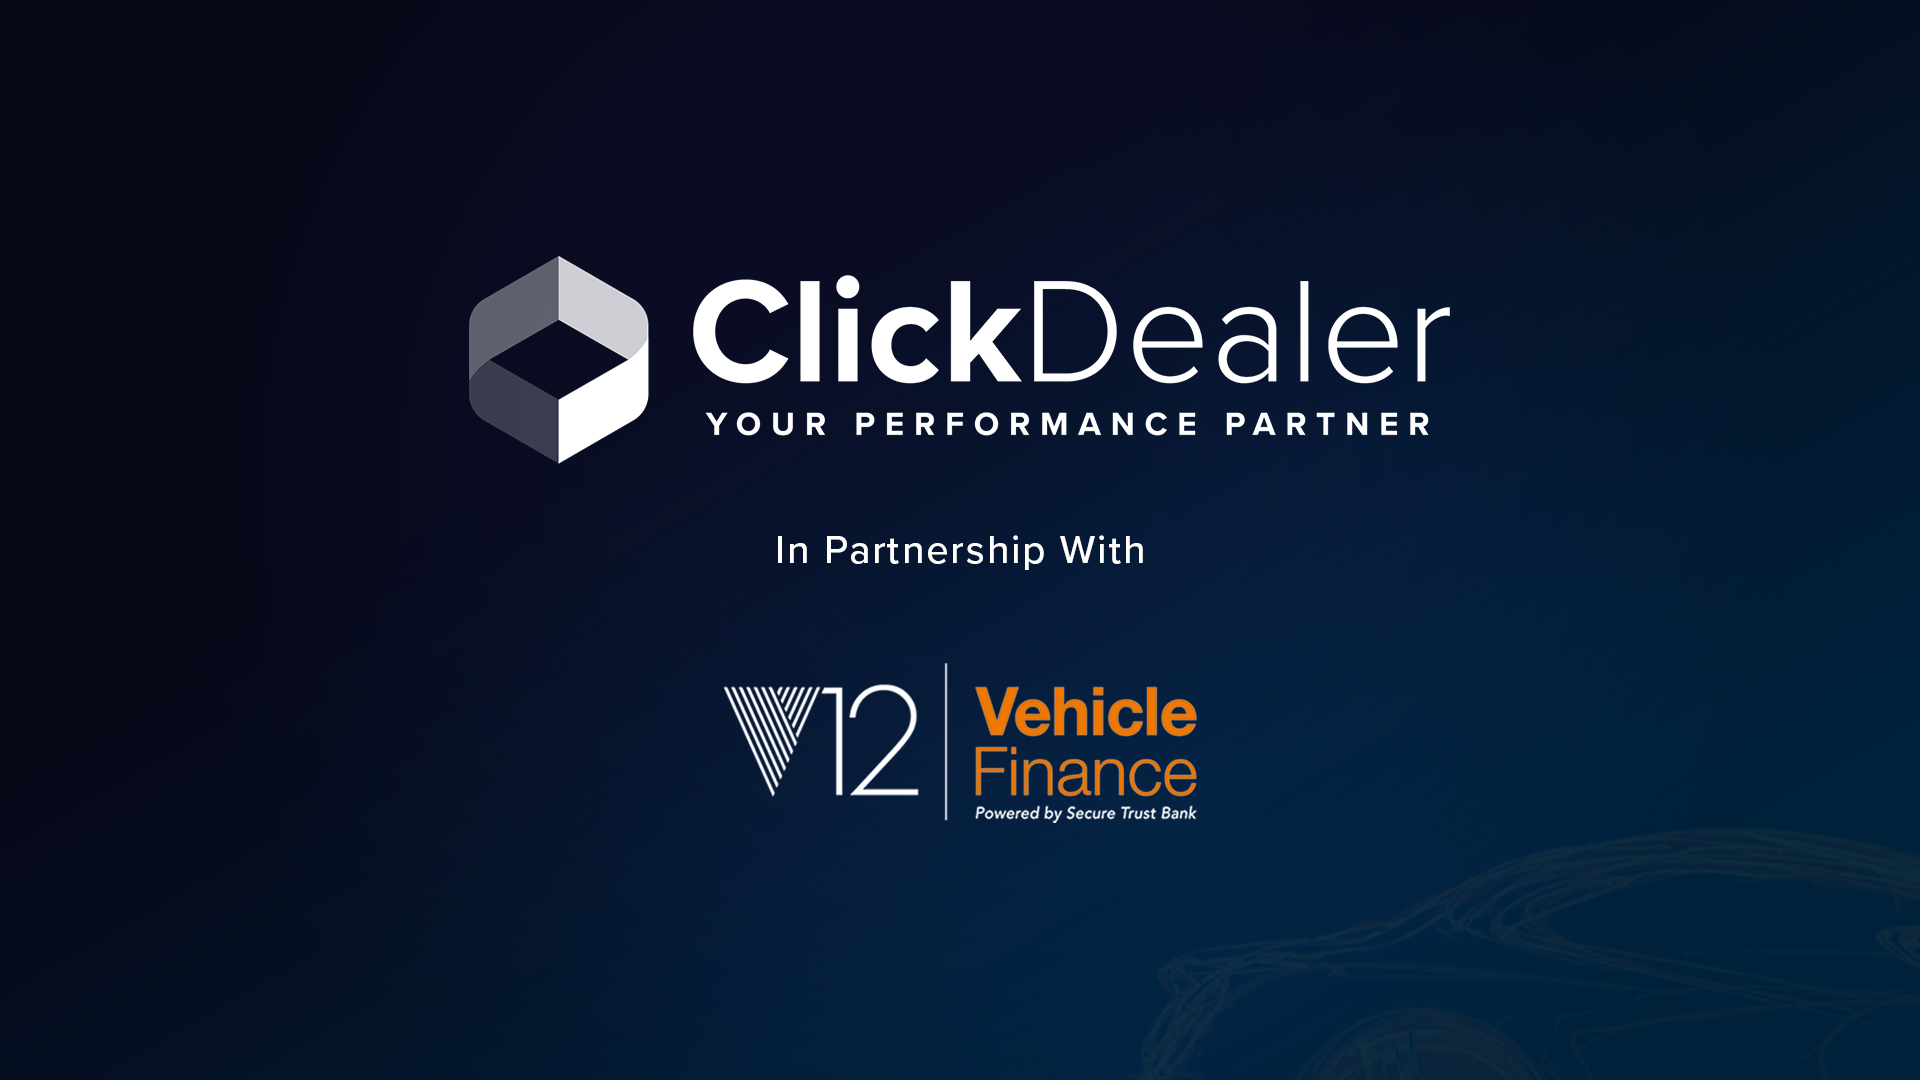 V12 Vehicle Finance And Click Dealer Partnership